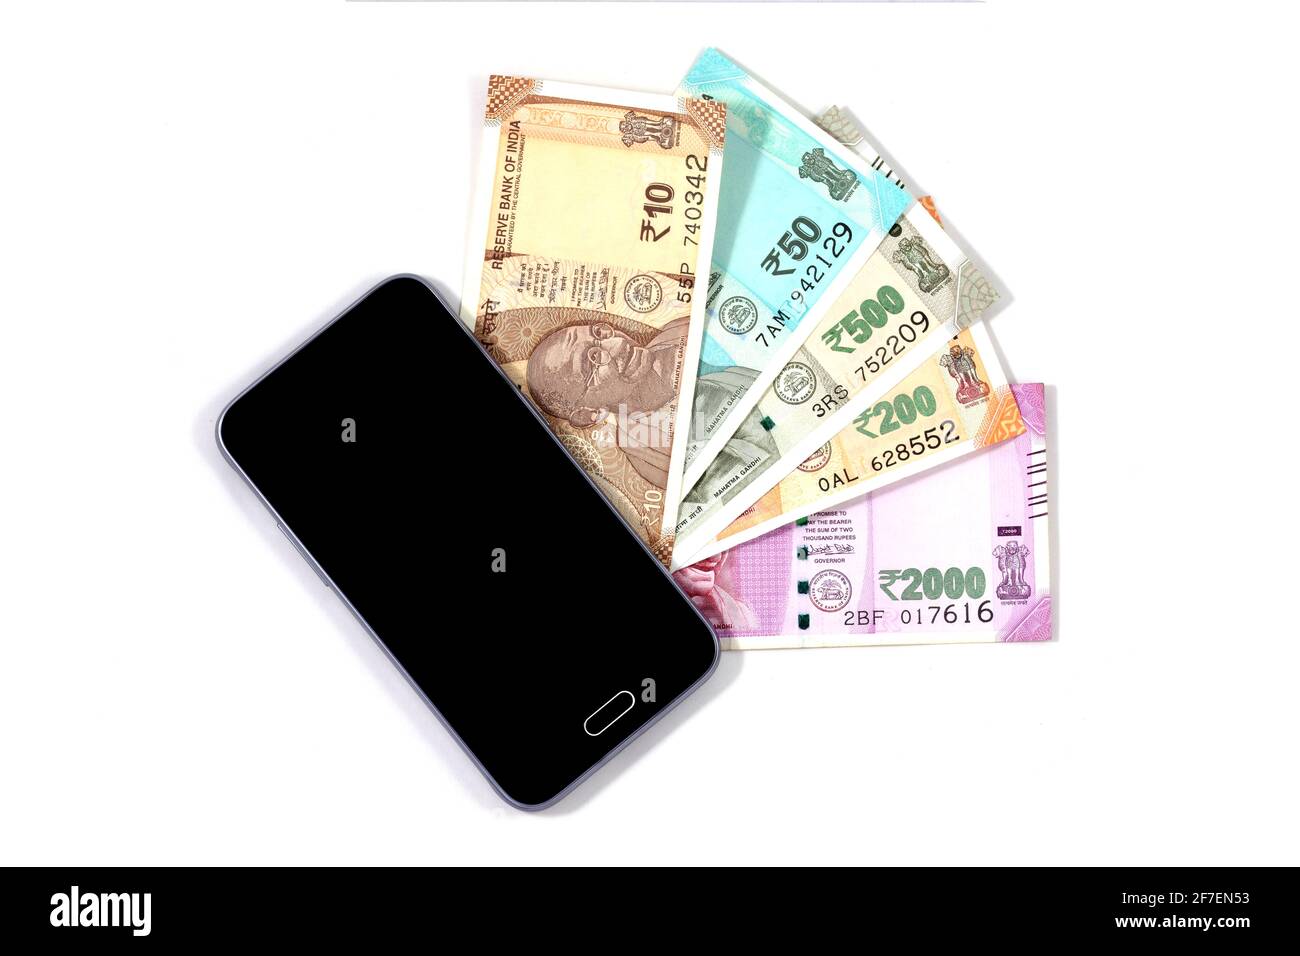 Smartphone mobile e note rupia indiana, denaro digitale, fin-tech, soldi facendo online concetti Foto Stock